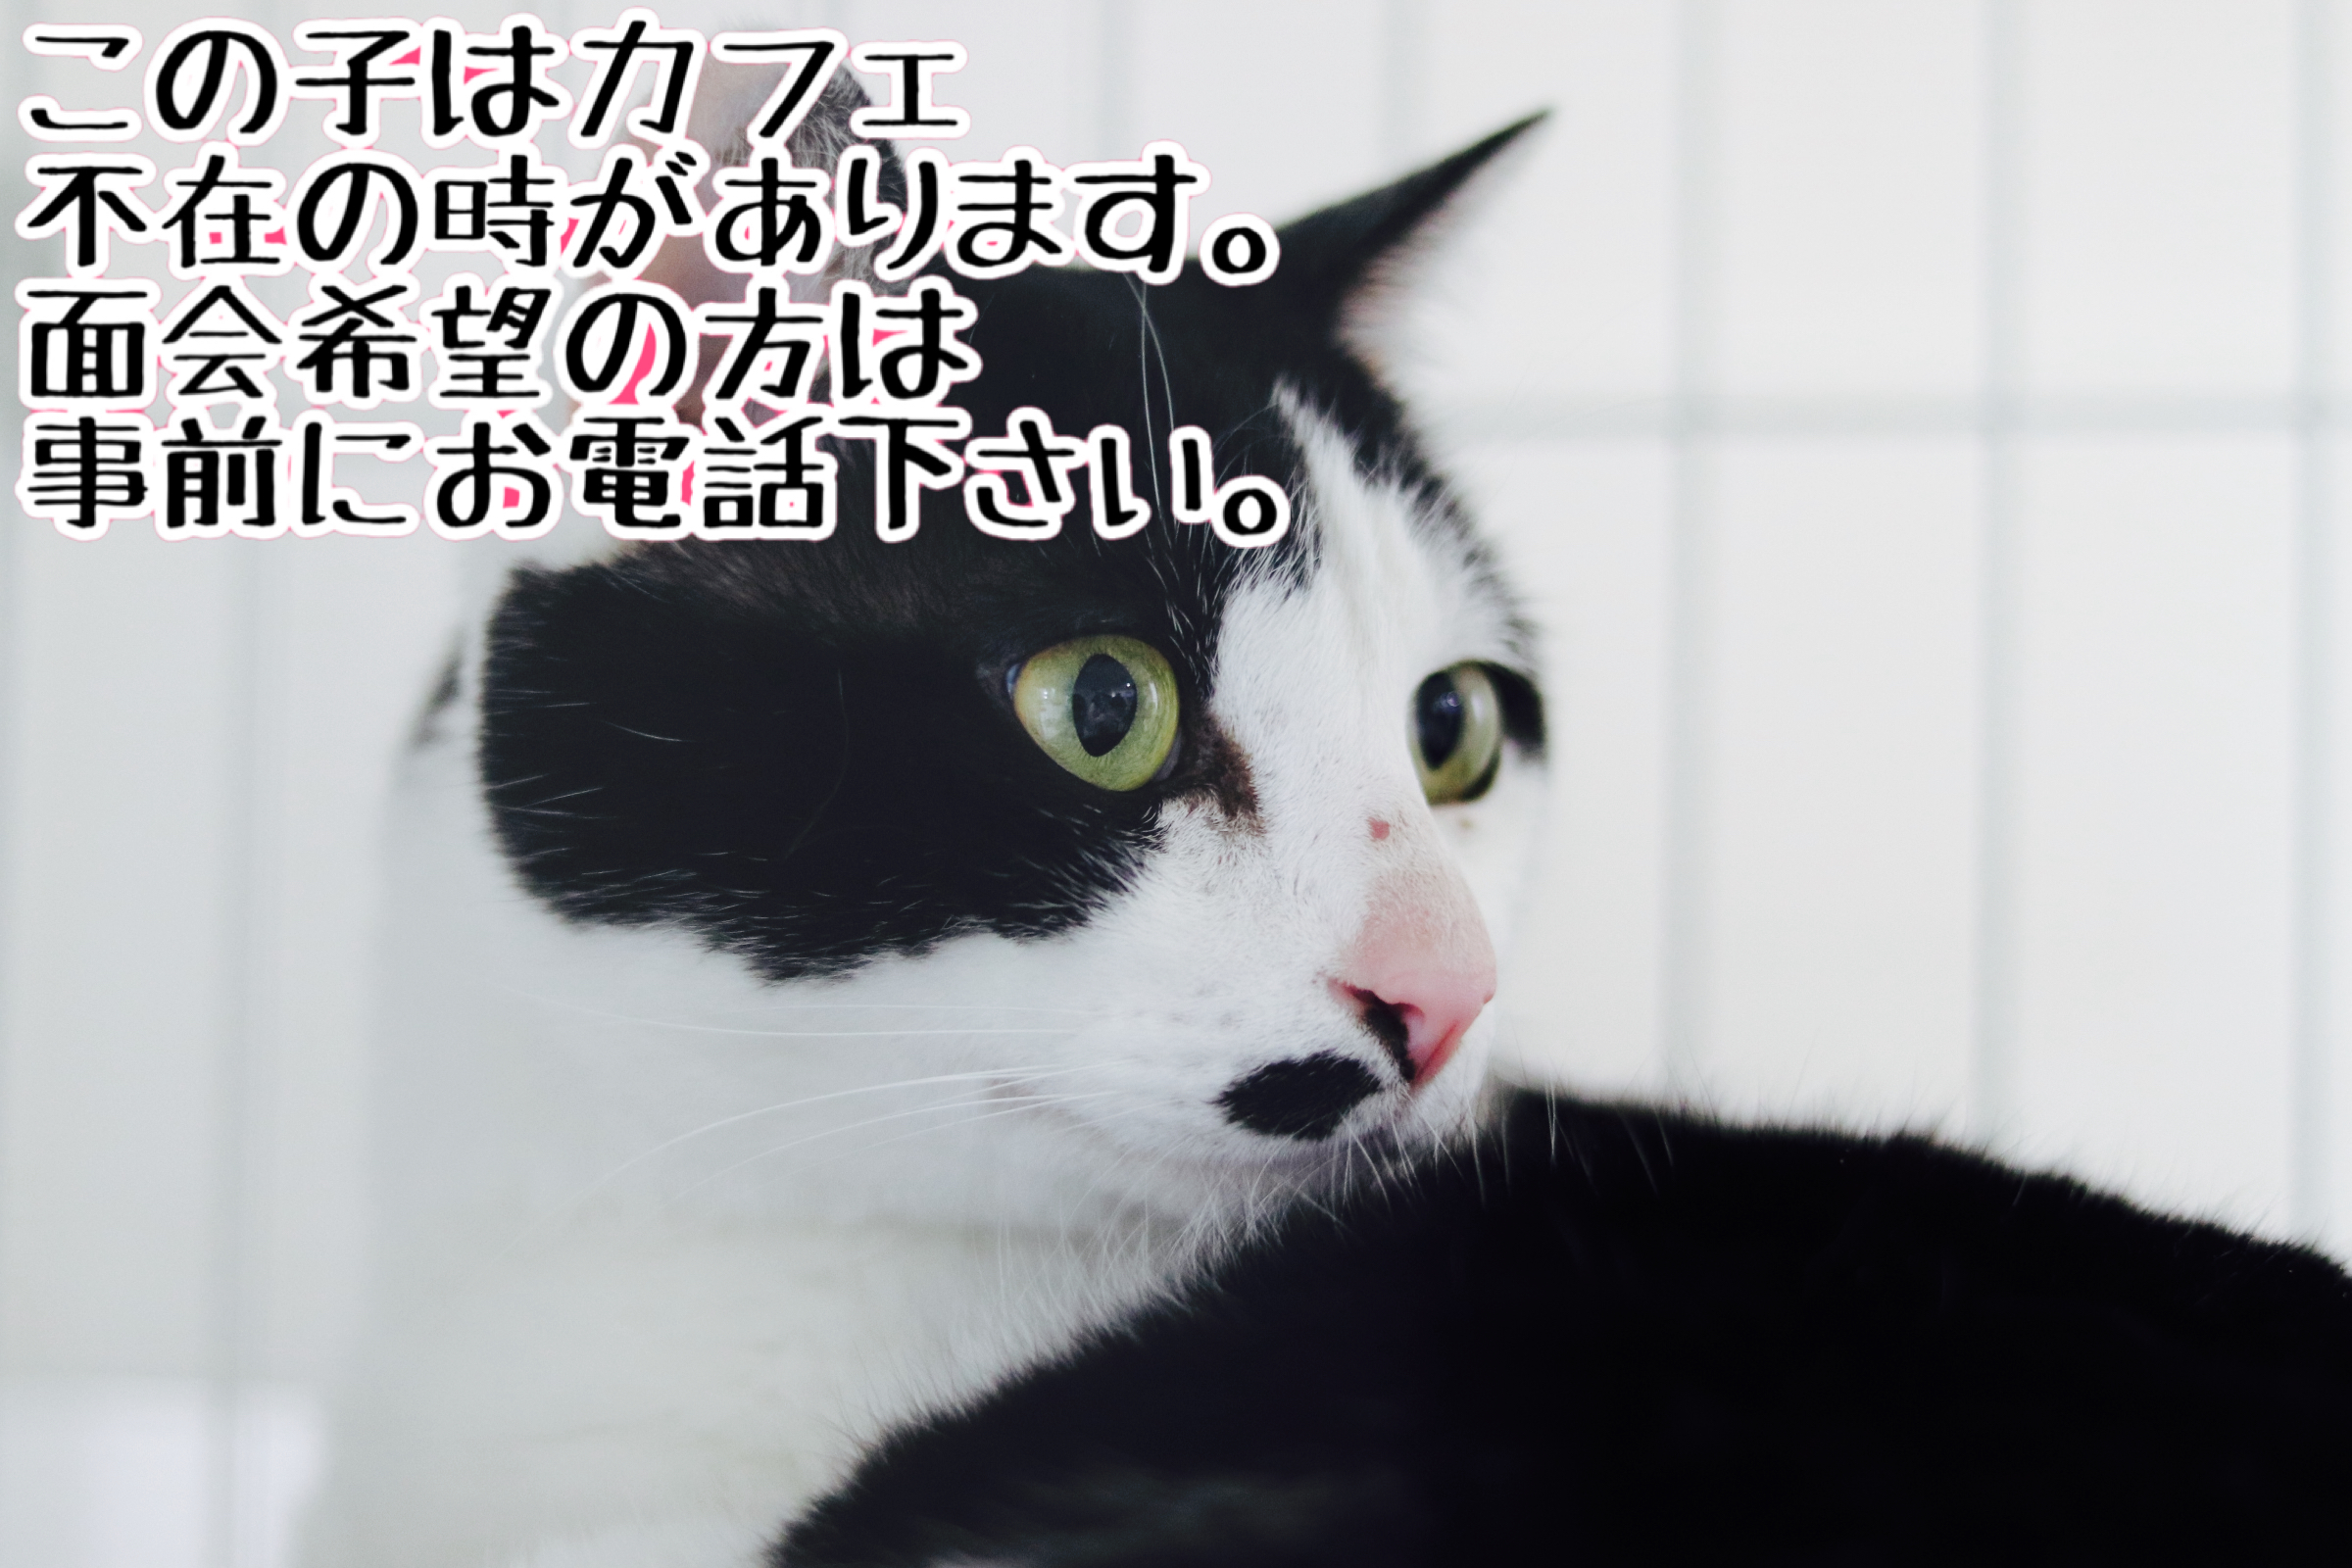 <ul>
<li>猫種：日本猫</li>
<li>名前（性別）：タロウ(男の子)</li>
<li>年齢：2014〜2014年春頃生まれ</li>
<li>保護経緯：飼い主が亡くなり、親族も引き継いで飼うことが出来ない</li>
</ul>
